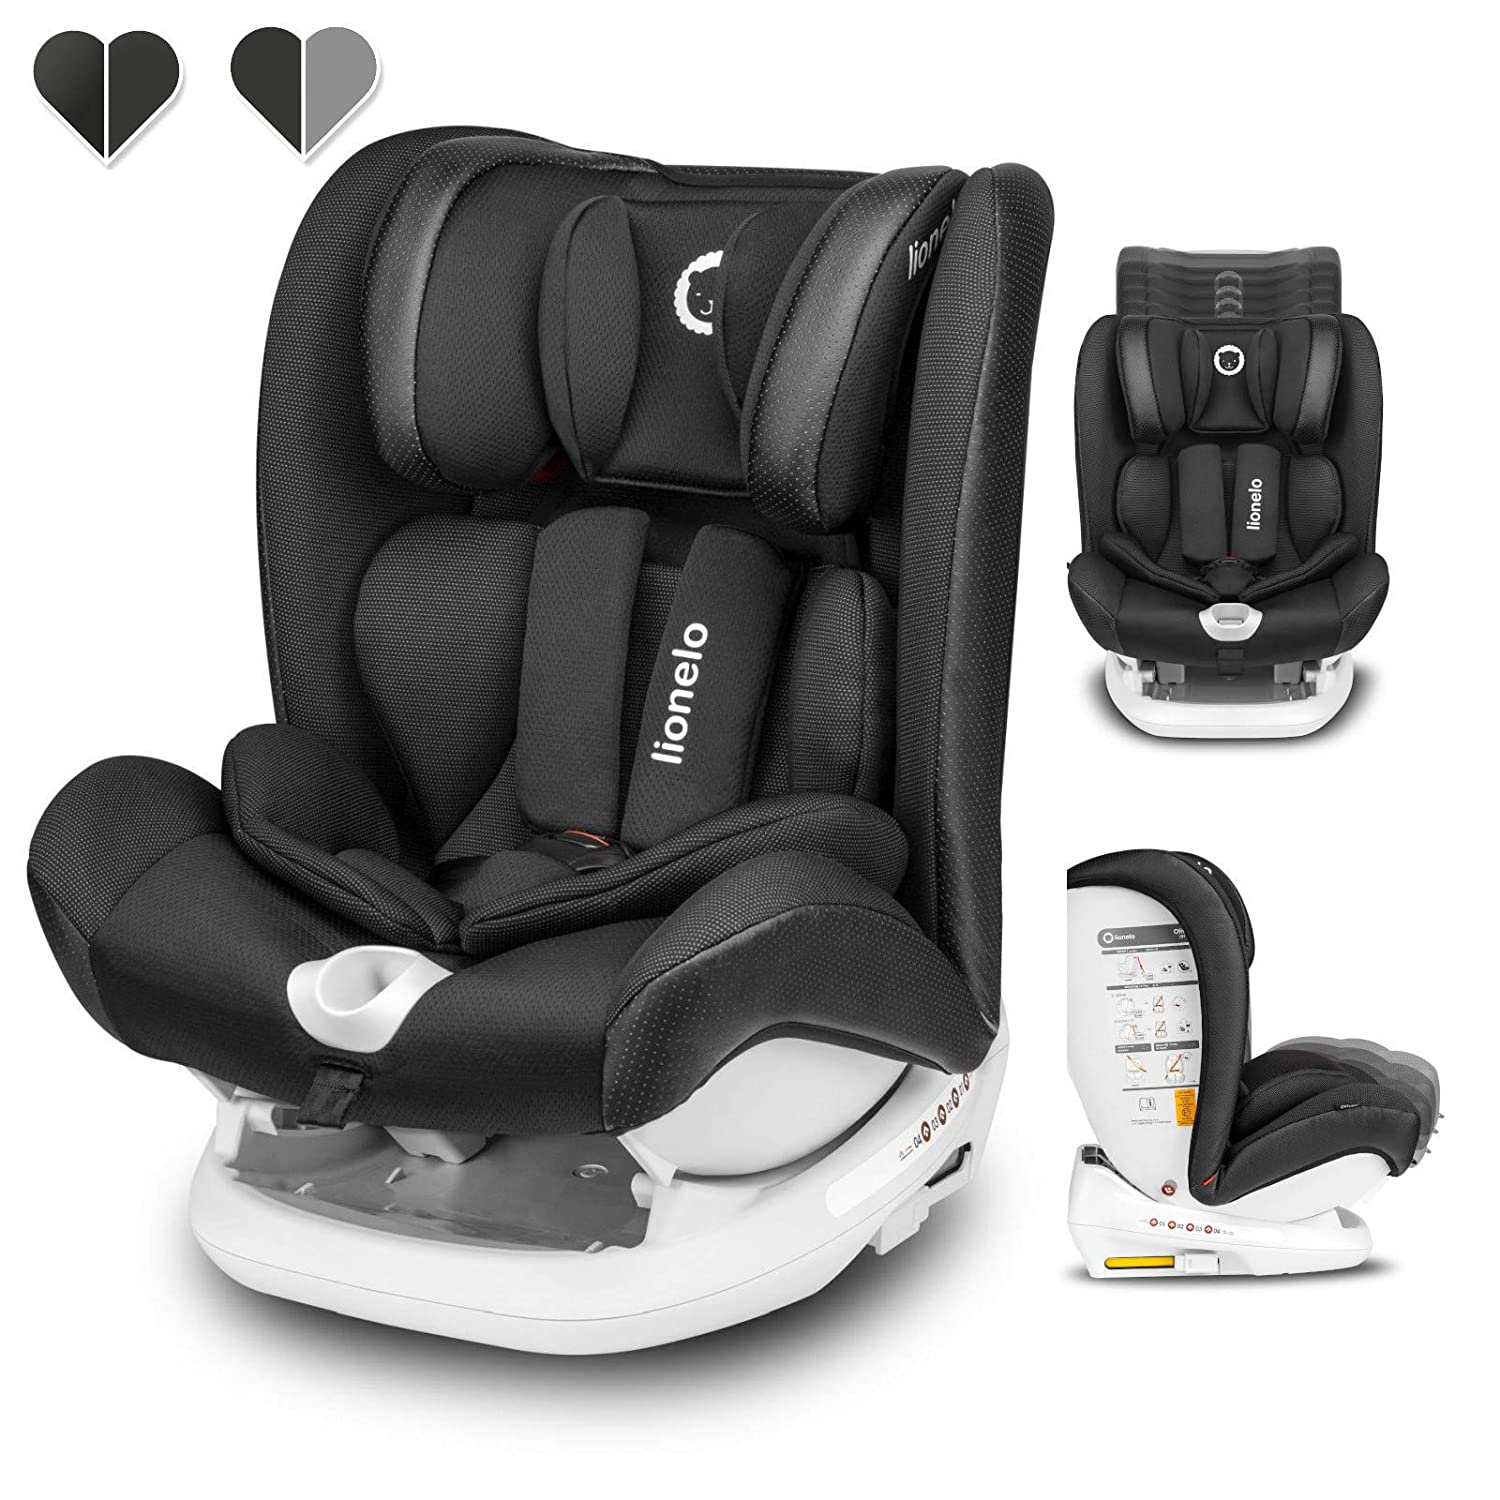 Lionelo Oliver Isofix Top Tether Child Seat 9-36 kg Side Protection 5-Point Belt Backrest Adjustment Headrest Adjustment Reduction Insert ECE R44 04 (Black)